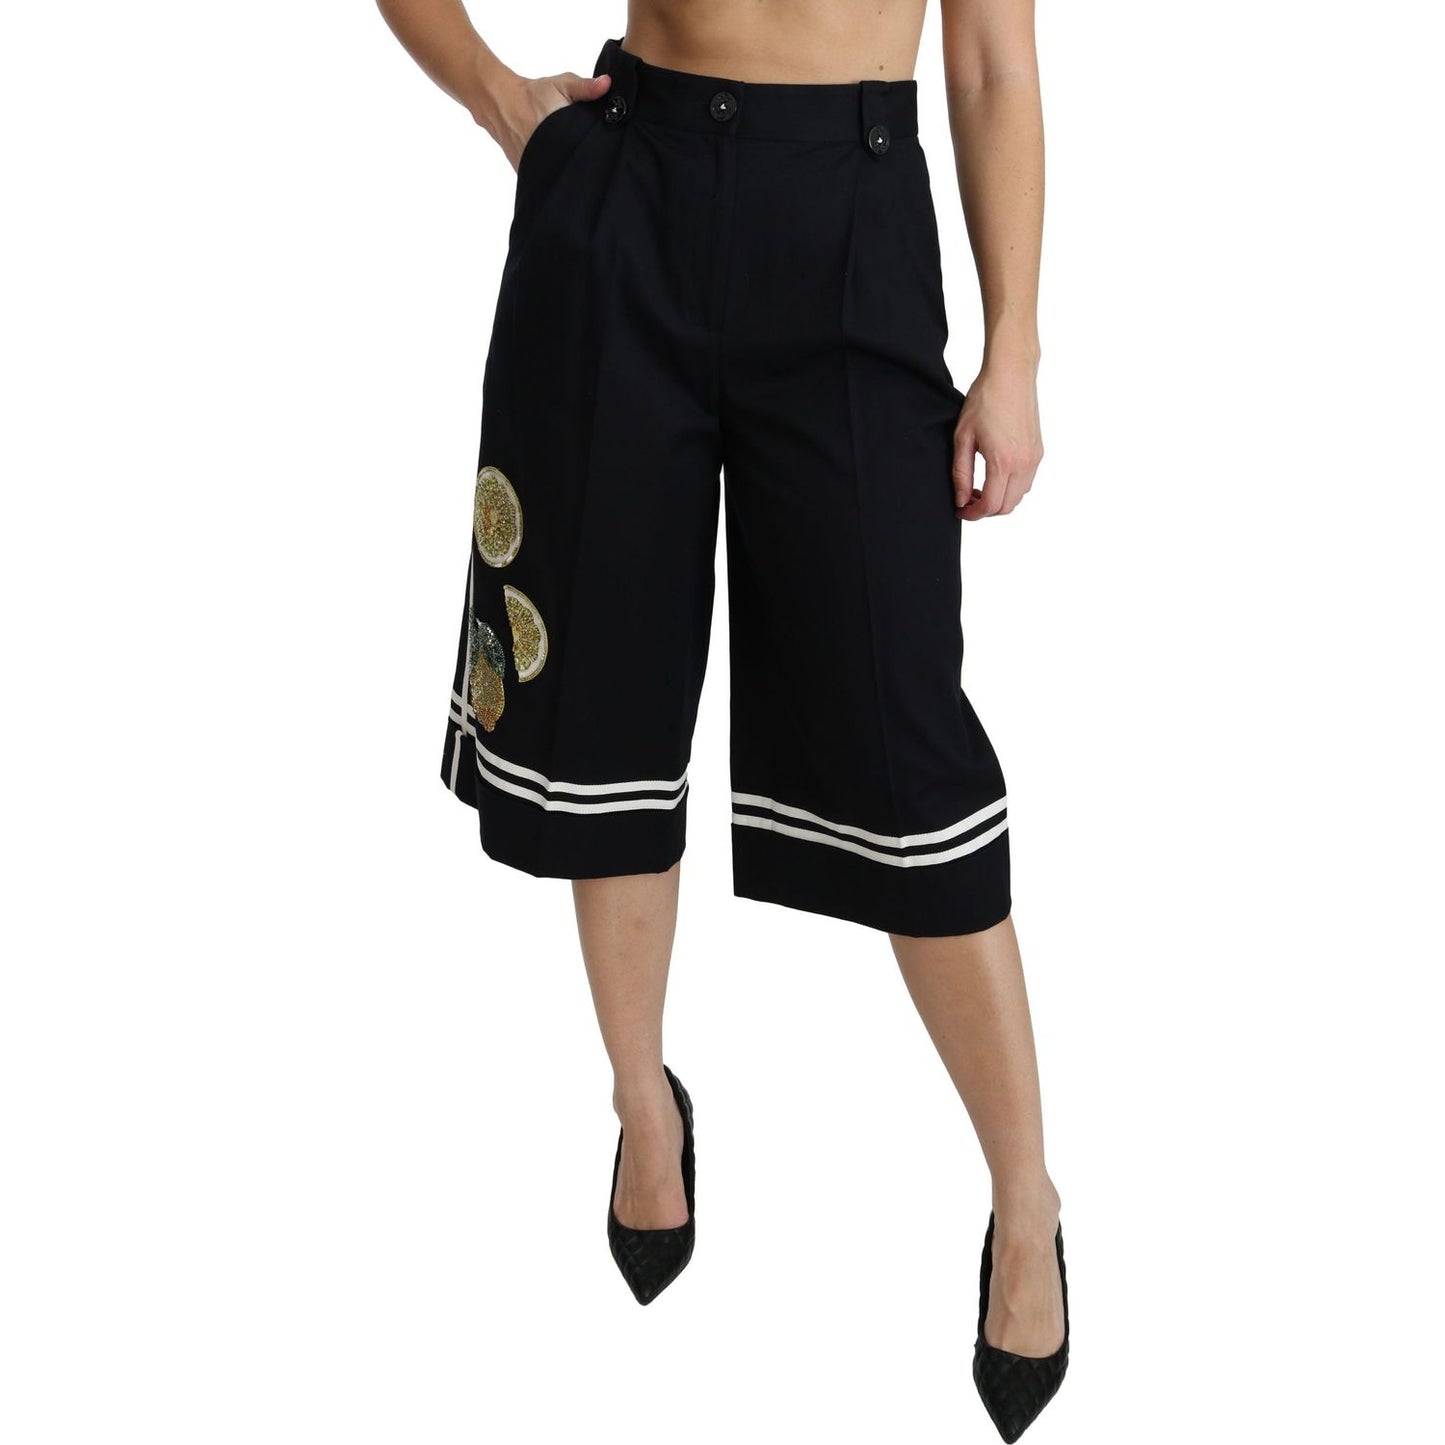 Dolce & Gabbana High Waist Palazzo Cropped Pants in Black Lemon Jeans & Pants black-lemon-embellished-palazzo-cropped-pants